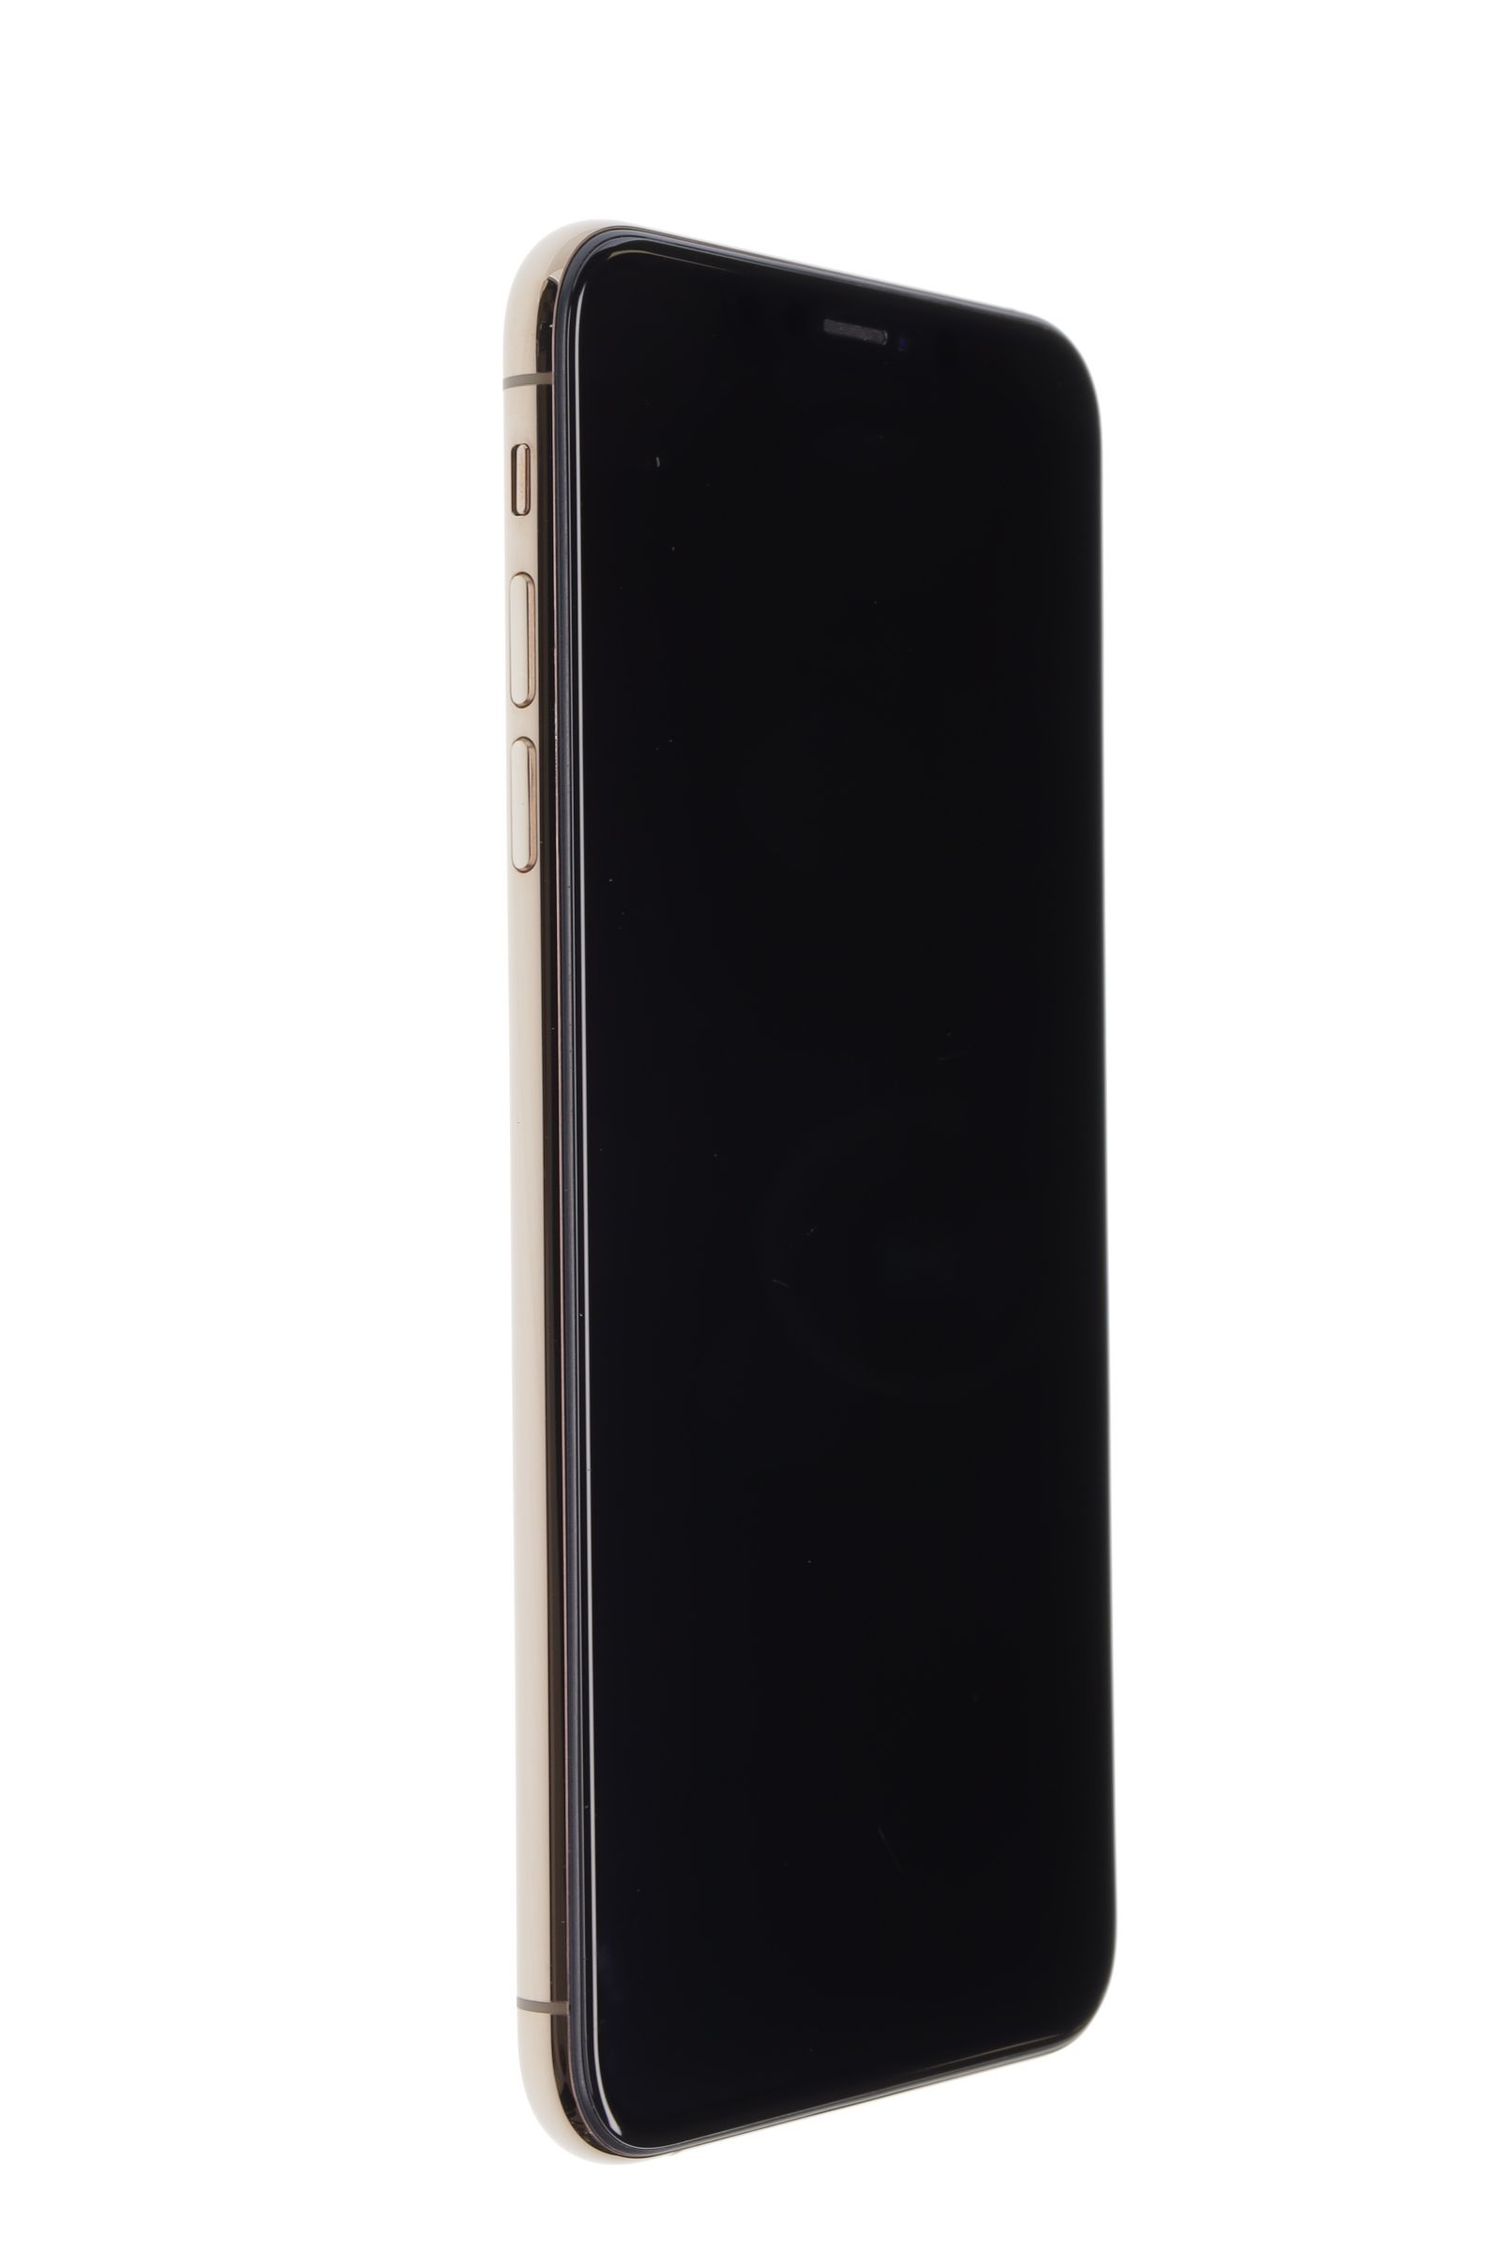 Мобилен телефон Apple iPhone XS Max, Gold, 64 GB, Foarte Bun